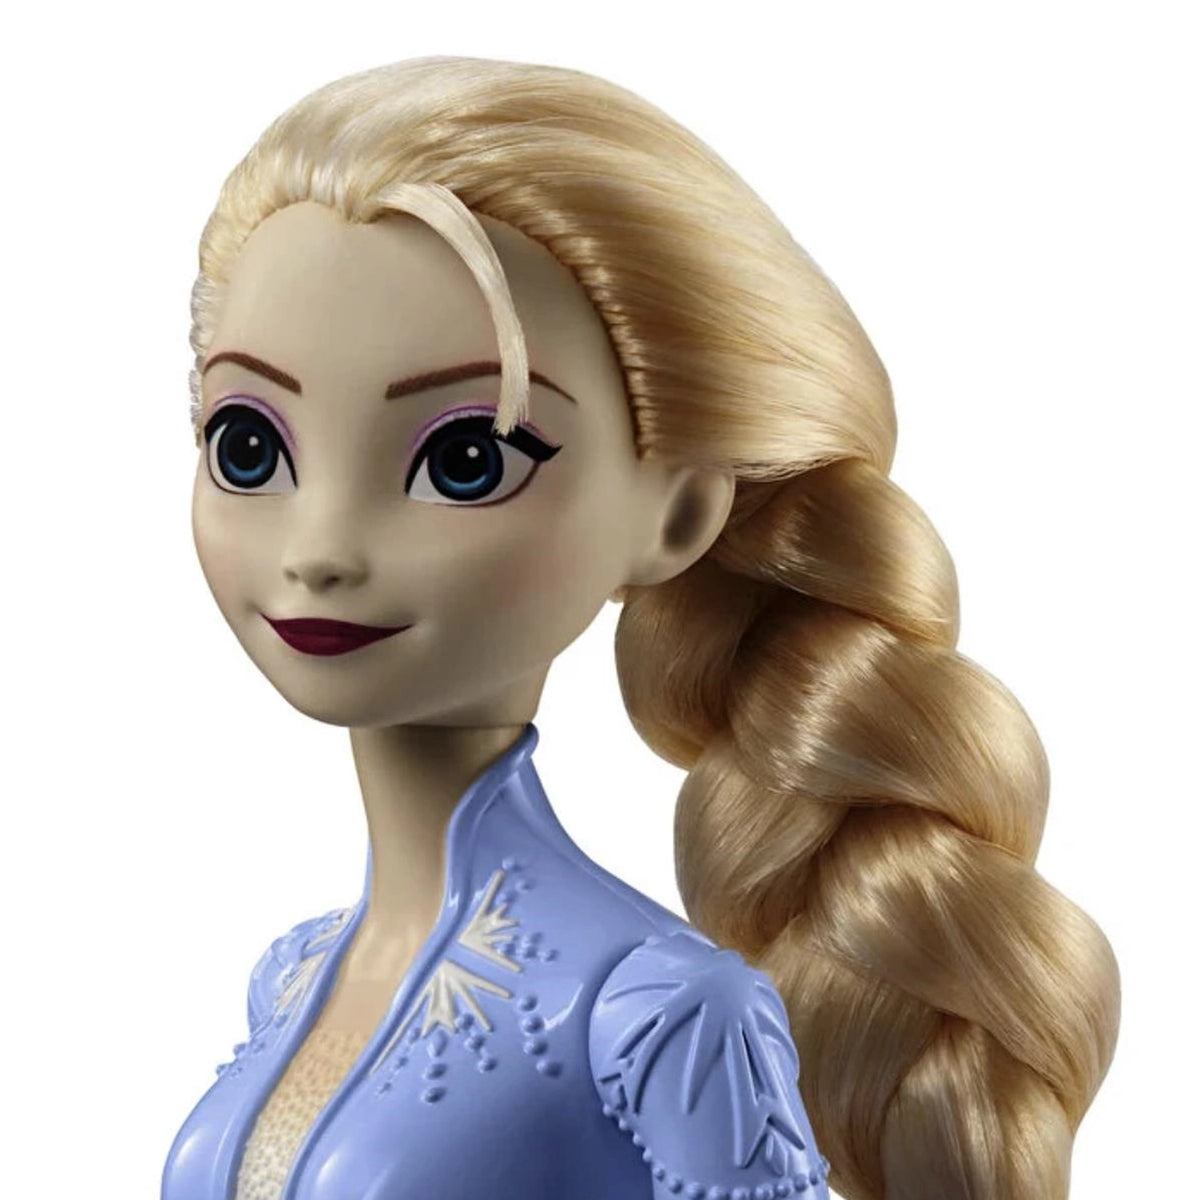 Disney Frozen Karlar Ülkesi Ana Karakter Bebekler Elsa HLW46-HLW48 | Toysall